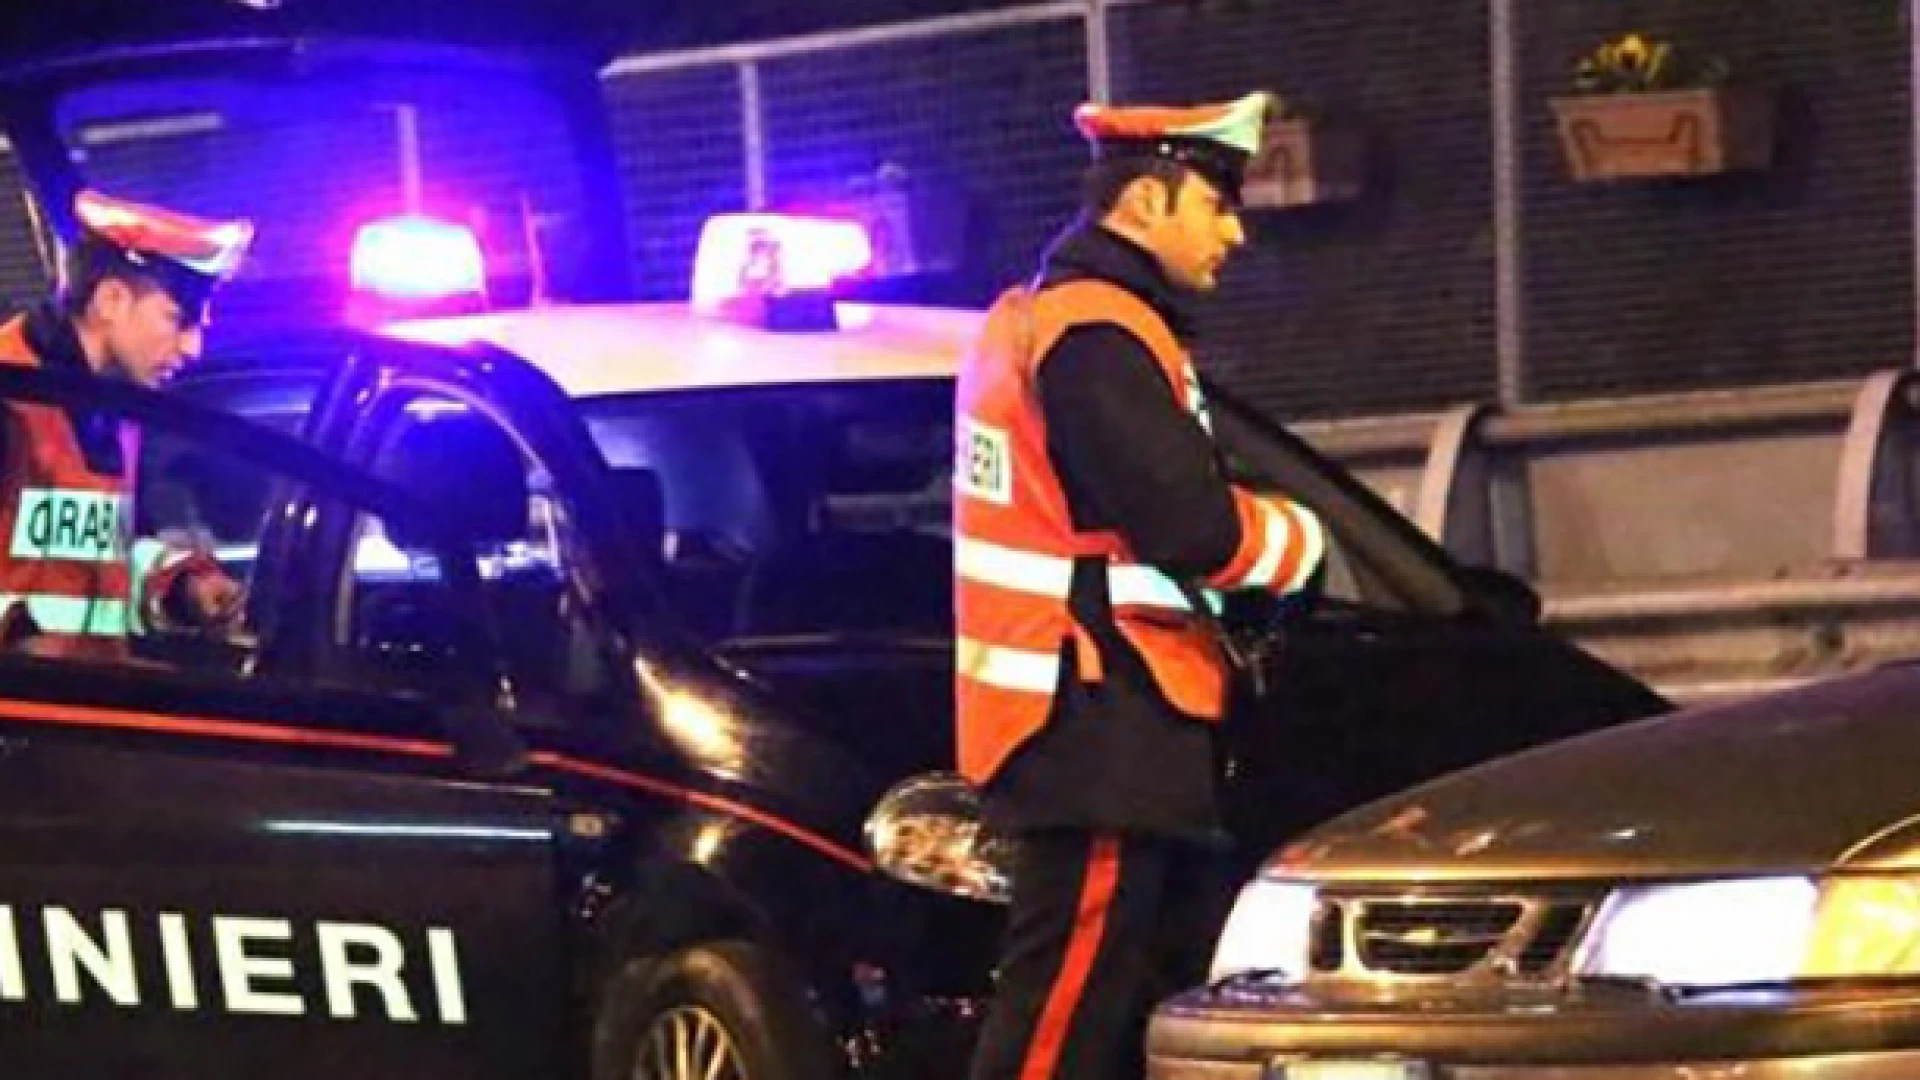 Isernia:  I Carabinieri denunciano un straniero per furto.  A Cantalupo false dichiarazioni di residenze per truffare la compagnia assicurativa.